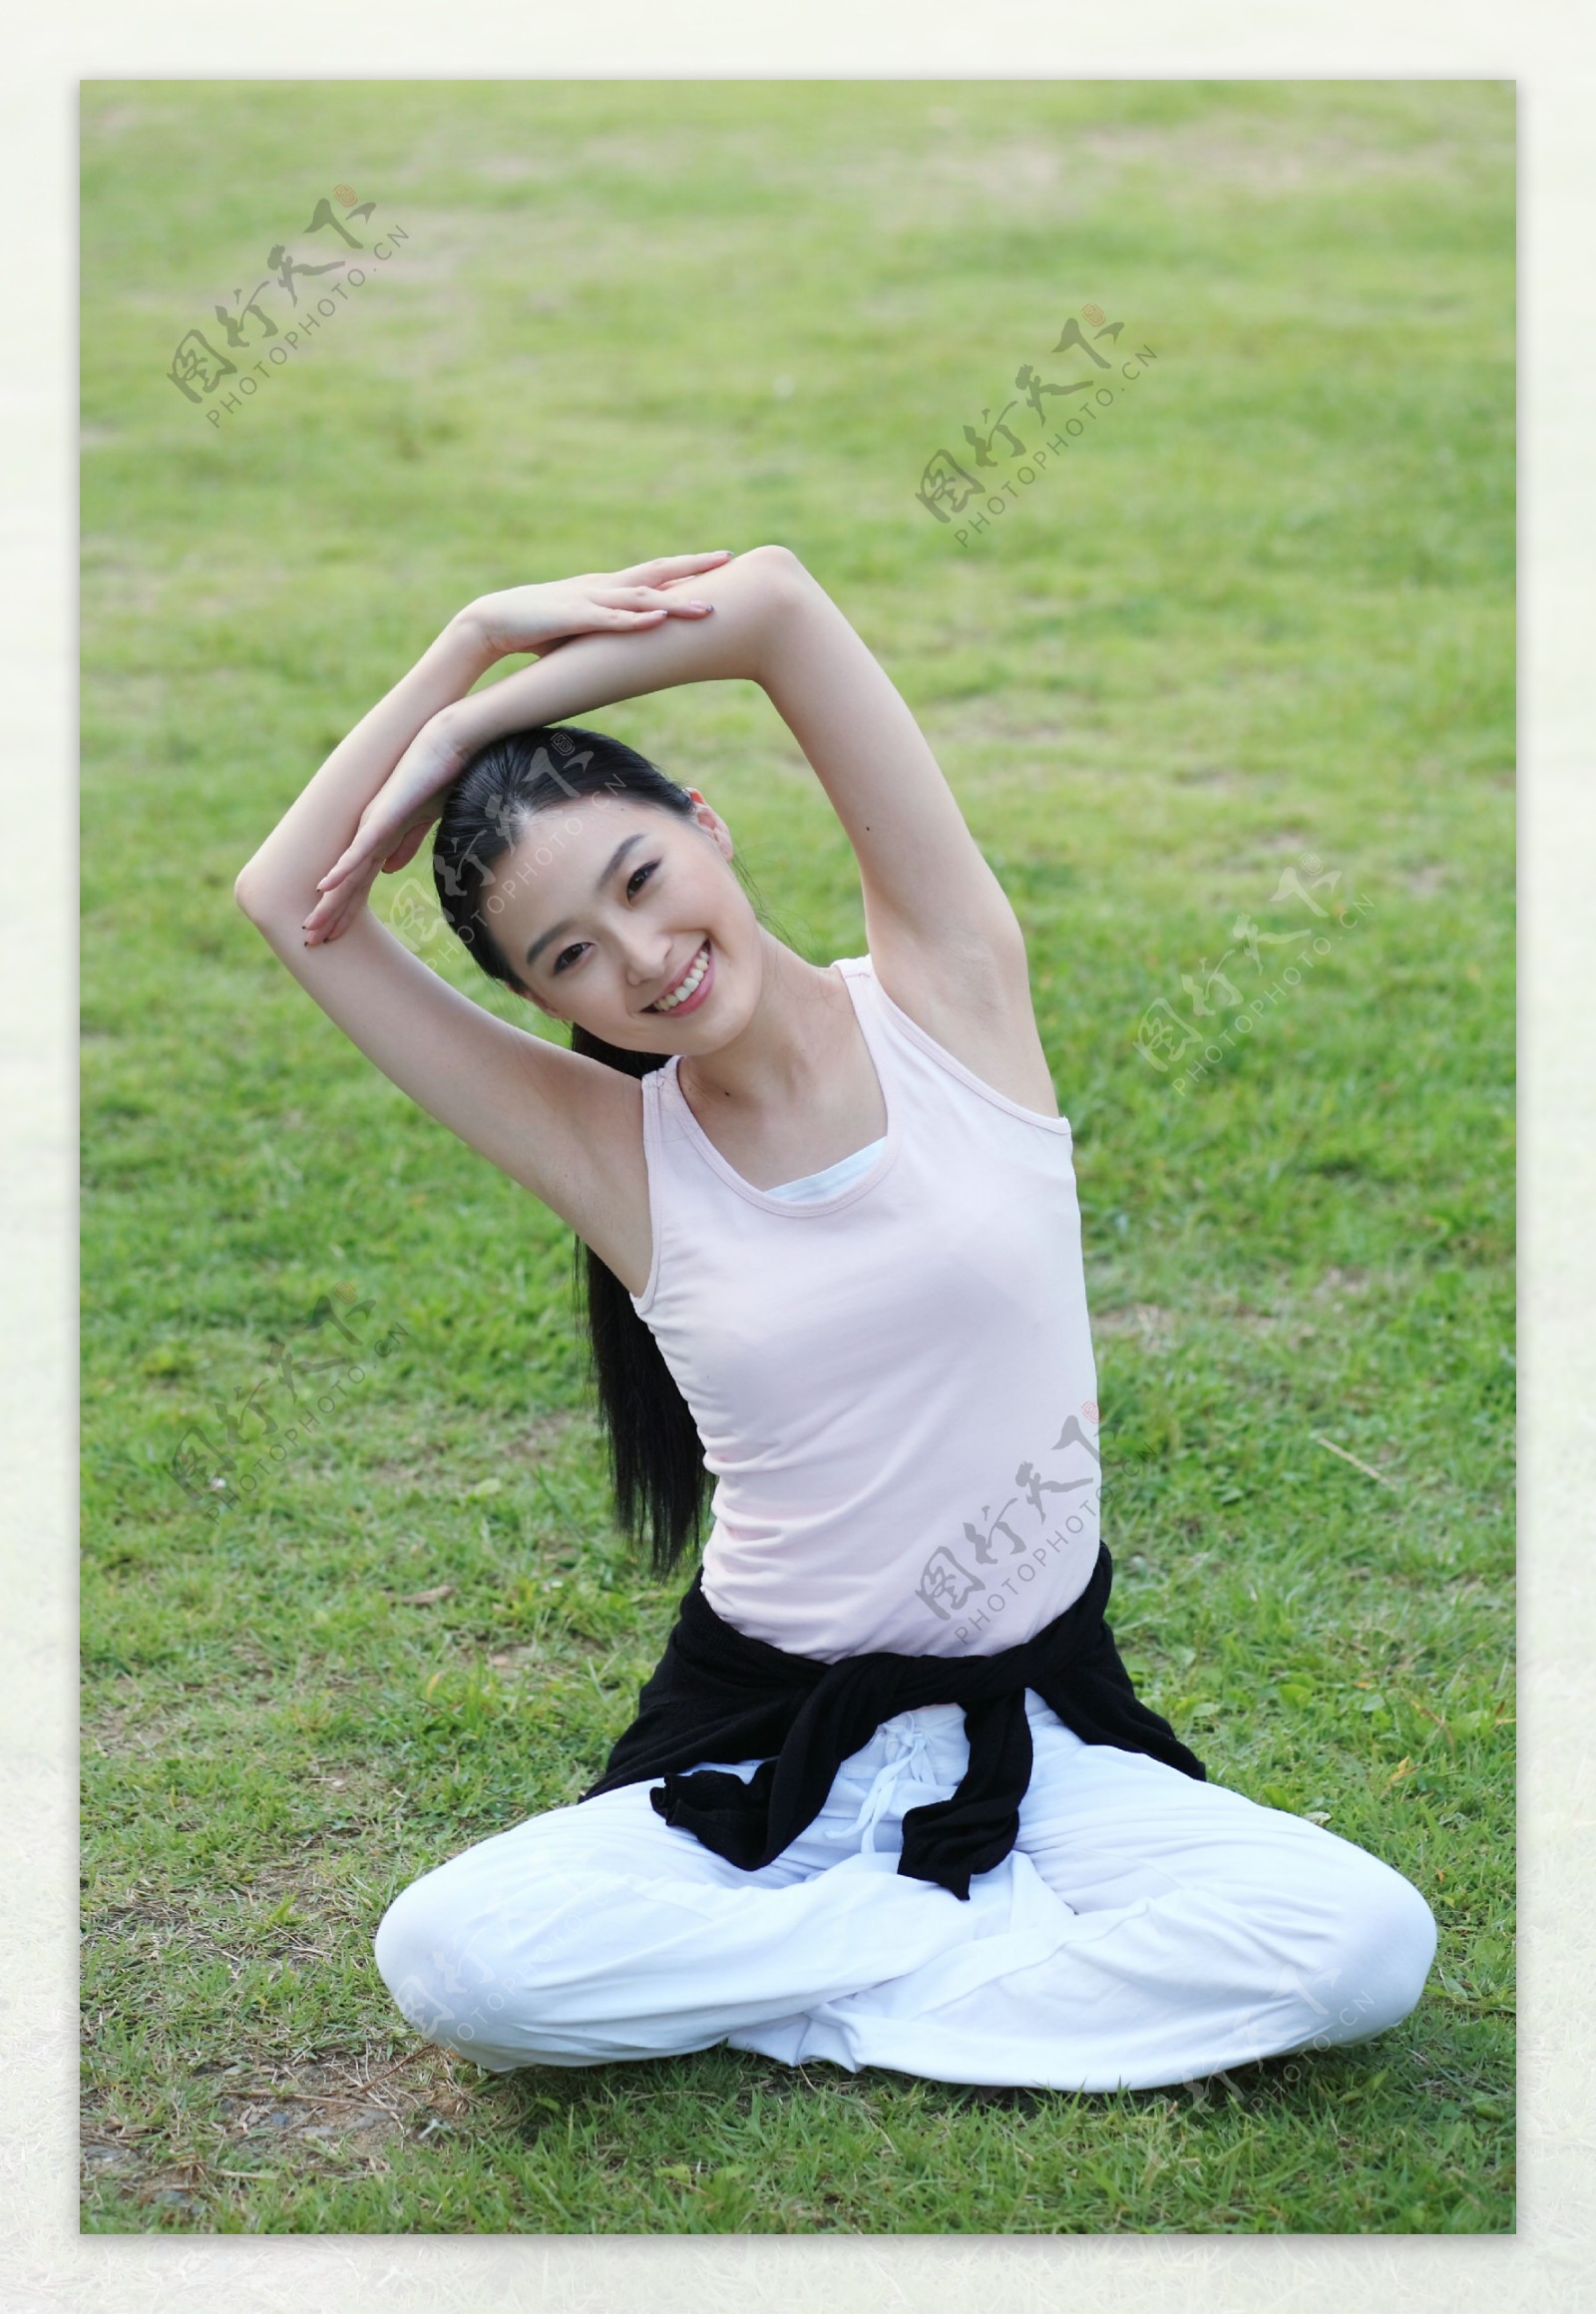 坐在草地上做瑜伽的运动少女图片图片